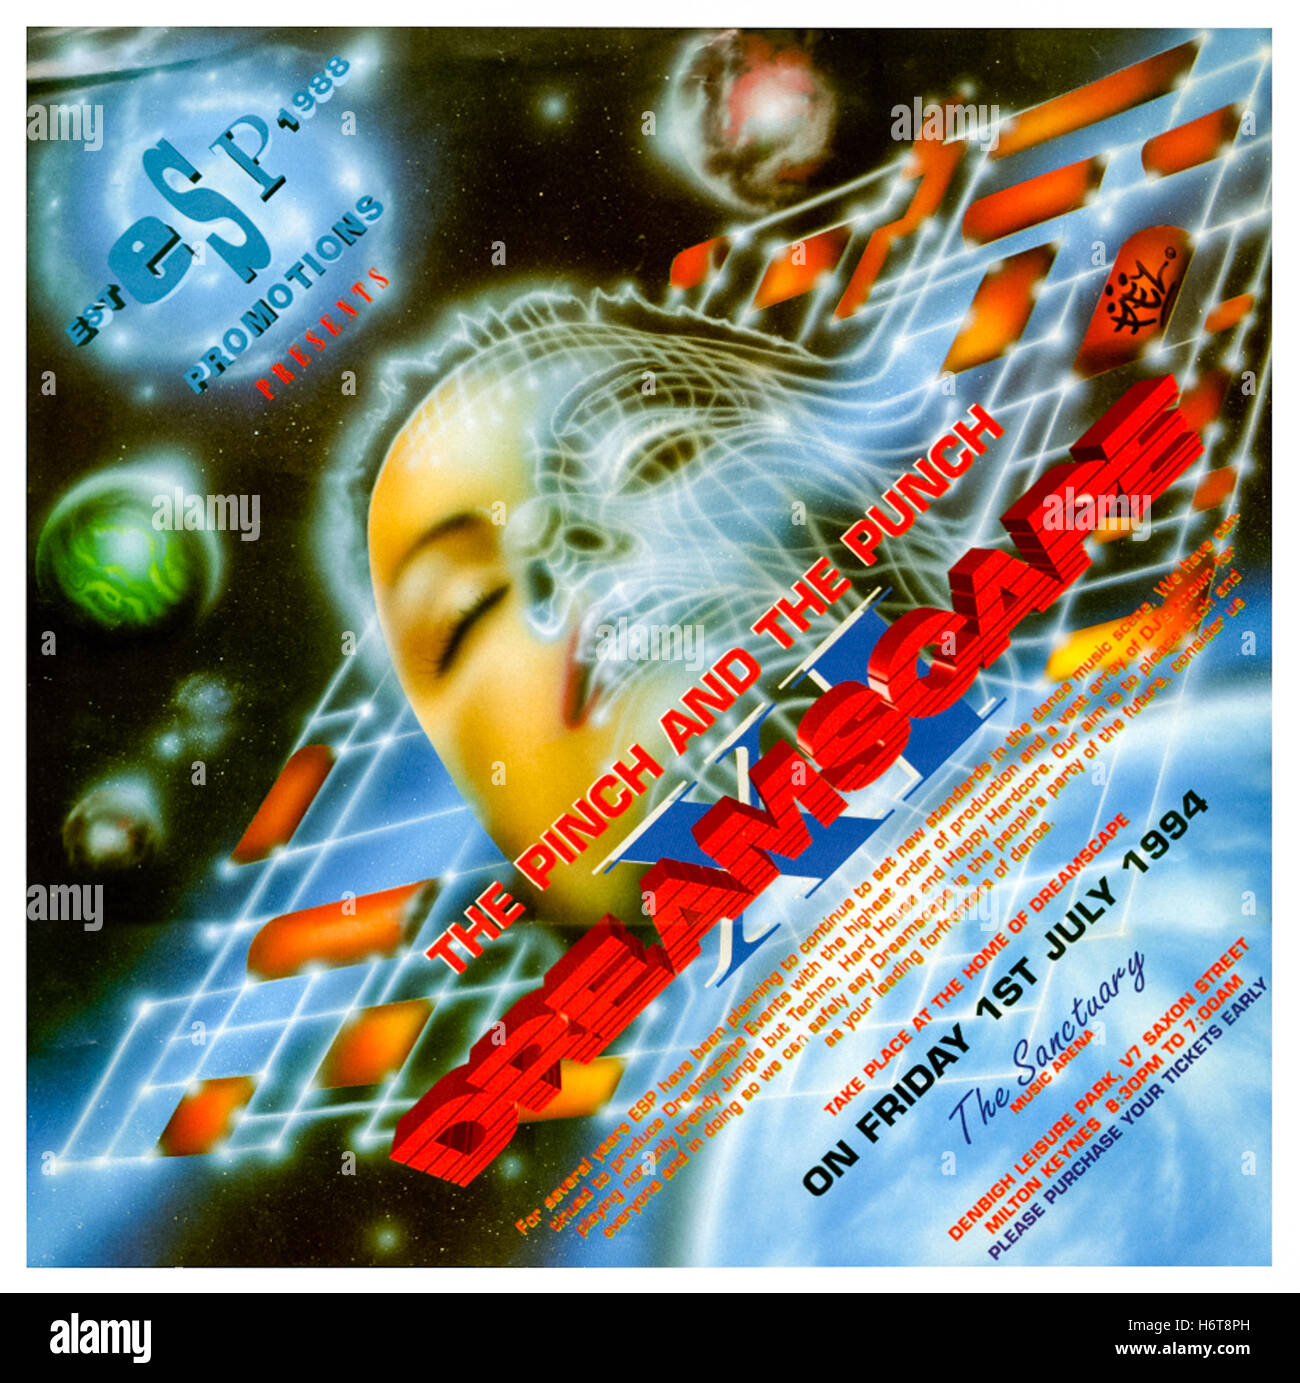 "Dreamscape XI die kneifen und den Stempel" 1. Juli 1994 schwärmen Flyer, dies war der elfte groß angelegte Rave von Promotoren Dreamscape organisiert und fand in The Sanctuary in Milton Keynes, England. Stockfoto